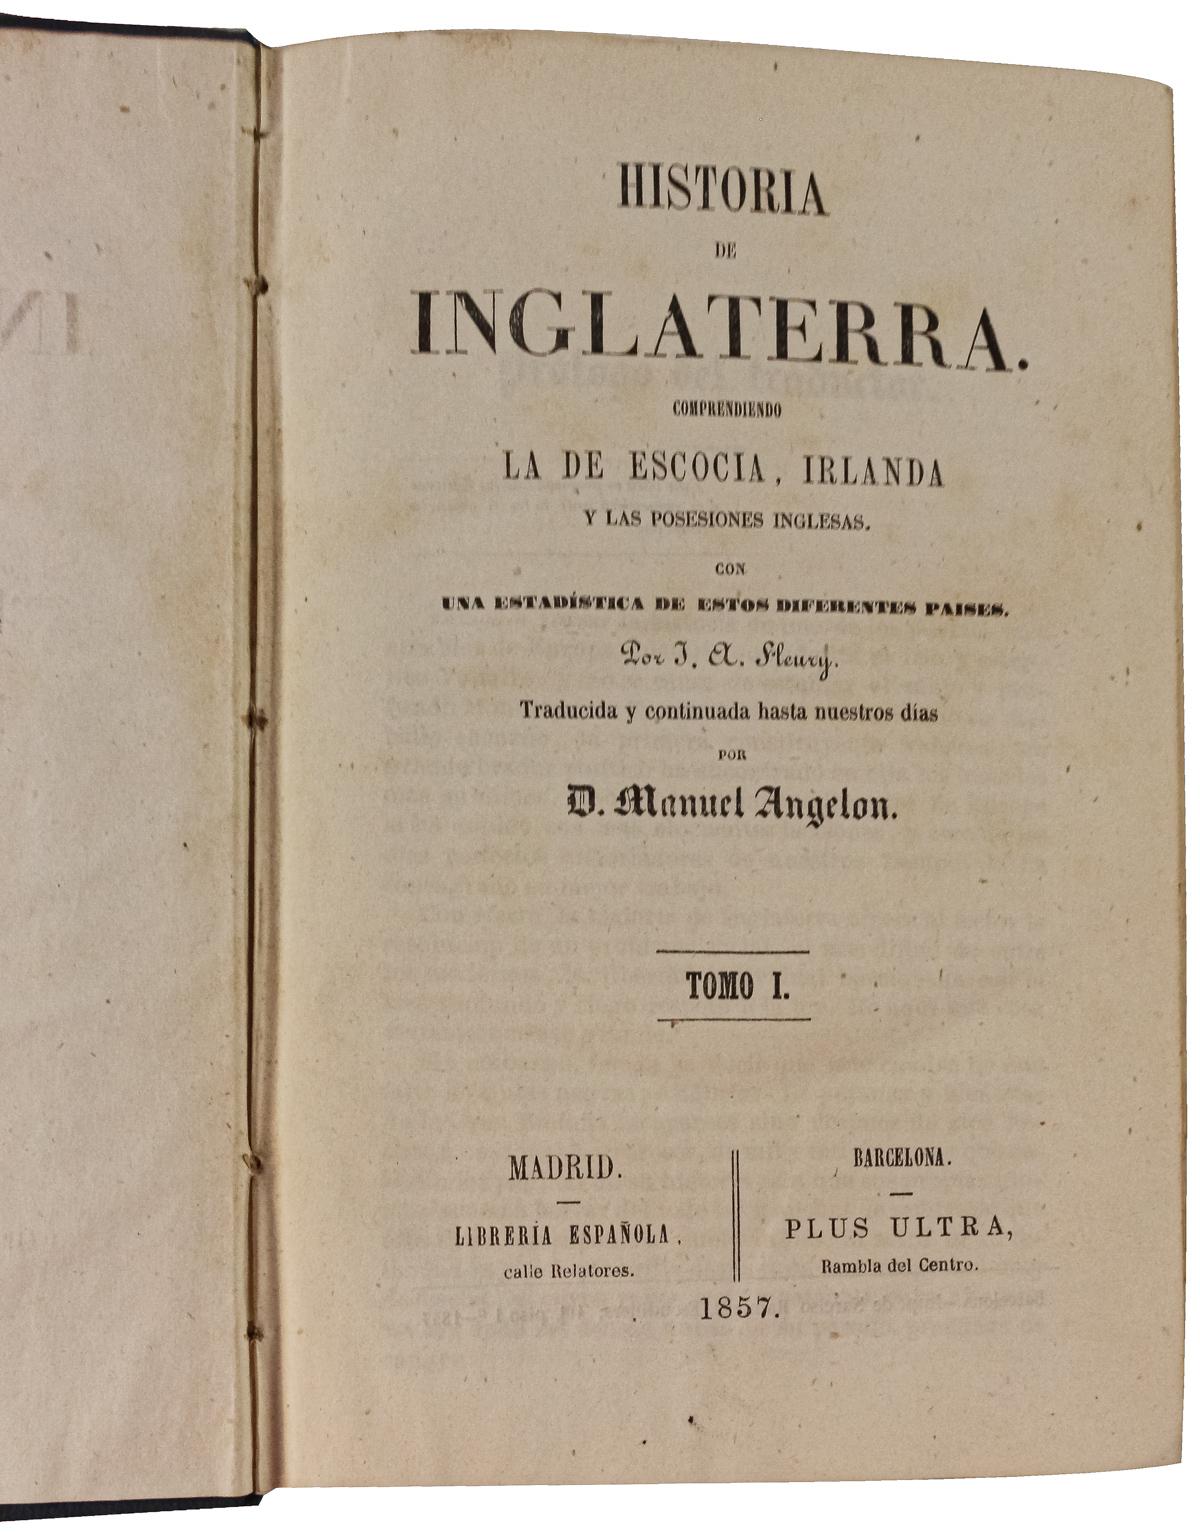 "HISTÓRIA DE INGLATERRA"